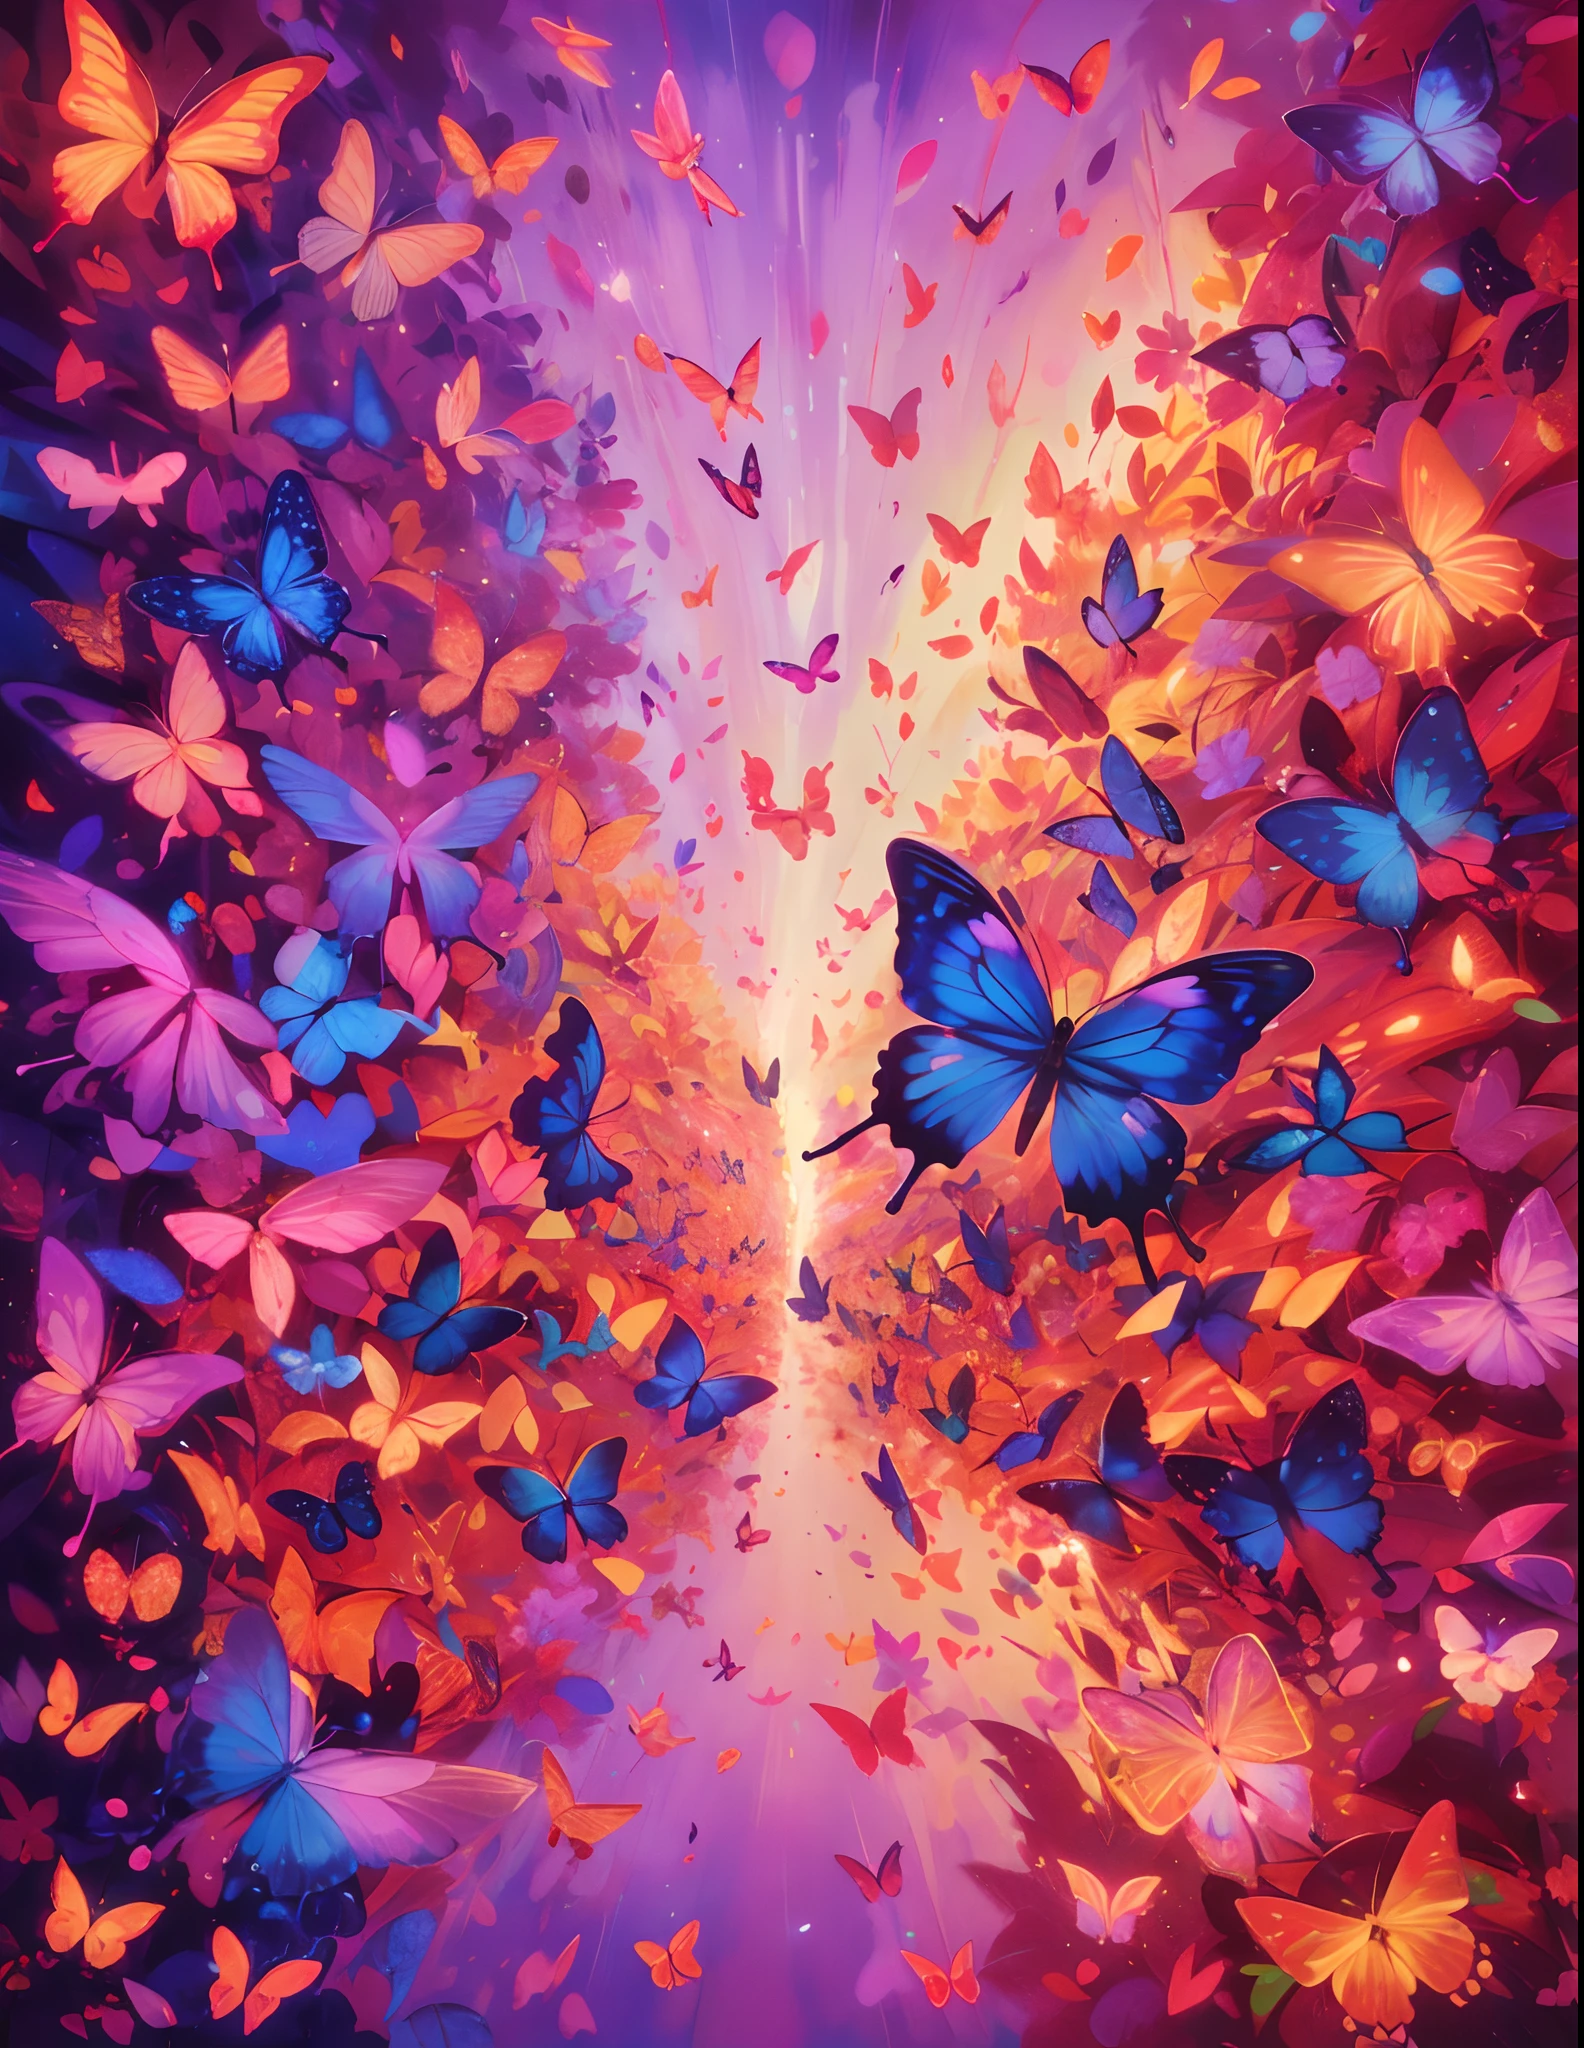 (最好的质量,高分辨率,极其详细),一只蝴蝶, 万花筒里的蝴蝶, 许多发光的蝴蝶,紫色和粉色, 金色和红色,鲜艳的色彩,抽象主义,多样的纹理,俏皮的构图,明亮的灯光,能量流,和谐的设计,转型模式,互连线,超现实的氛围,自然灵感元素,对称,流体运动,闪烁效果,神秘的深度,令人着迷的视觉错觉,视觉诗歌